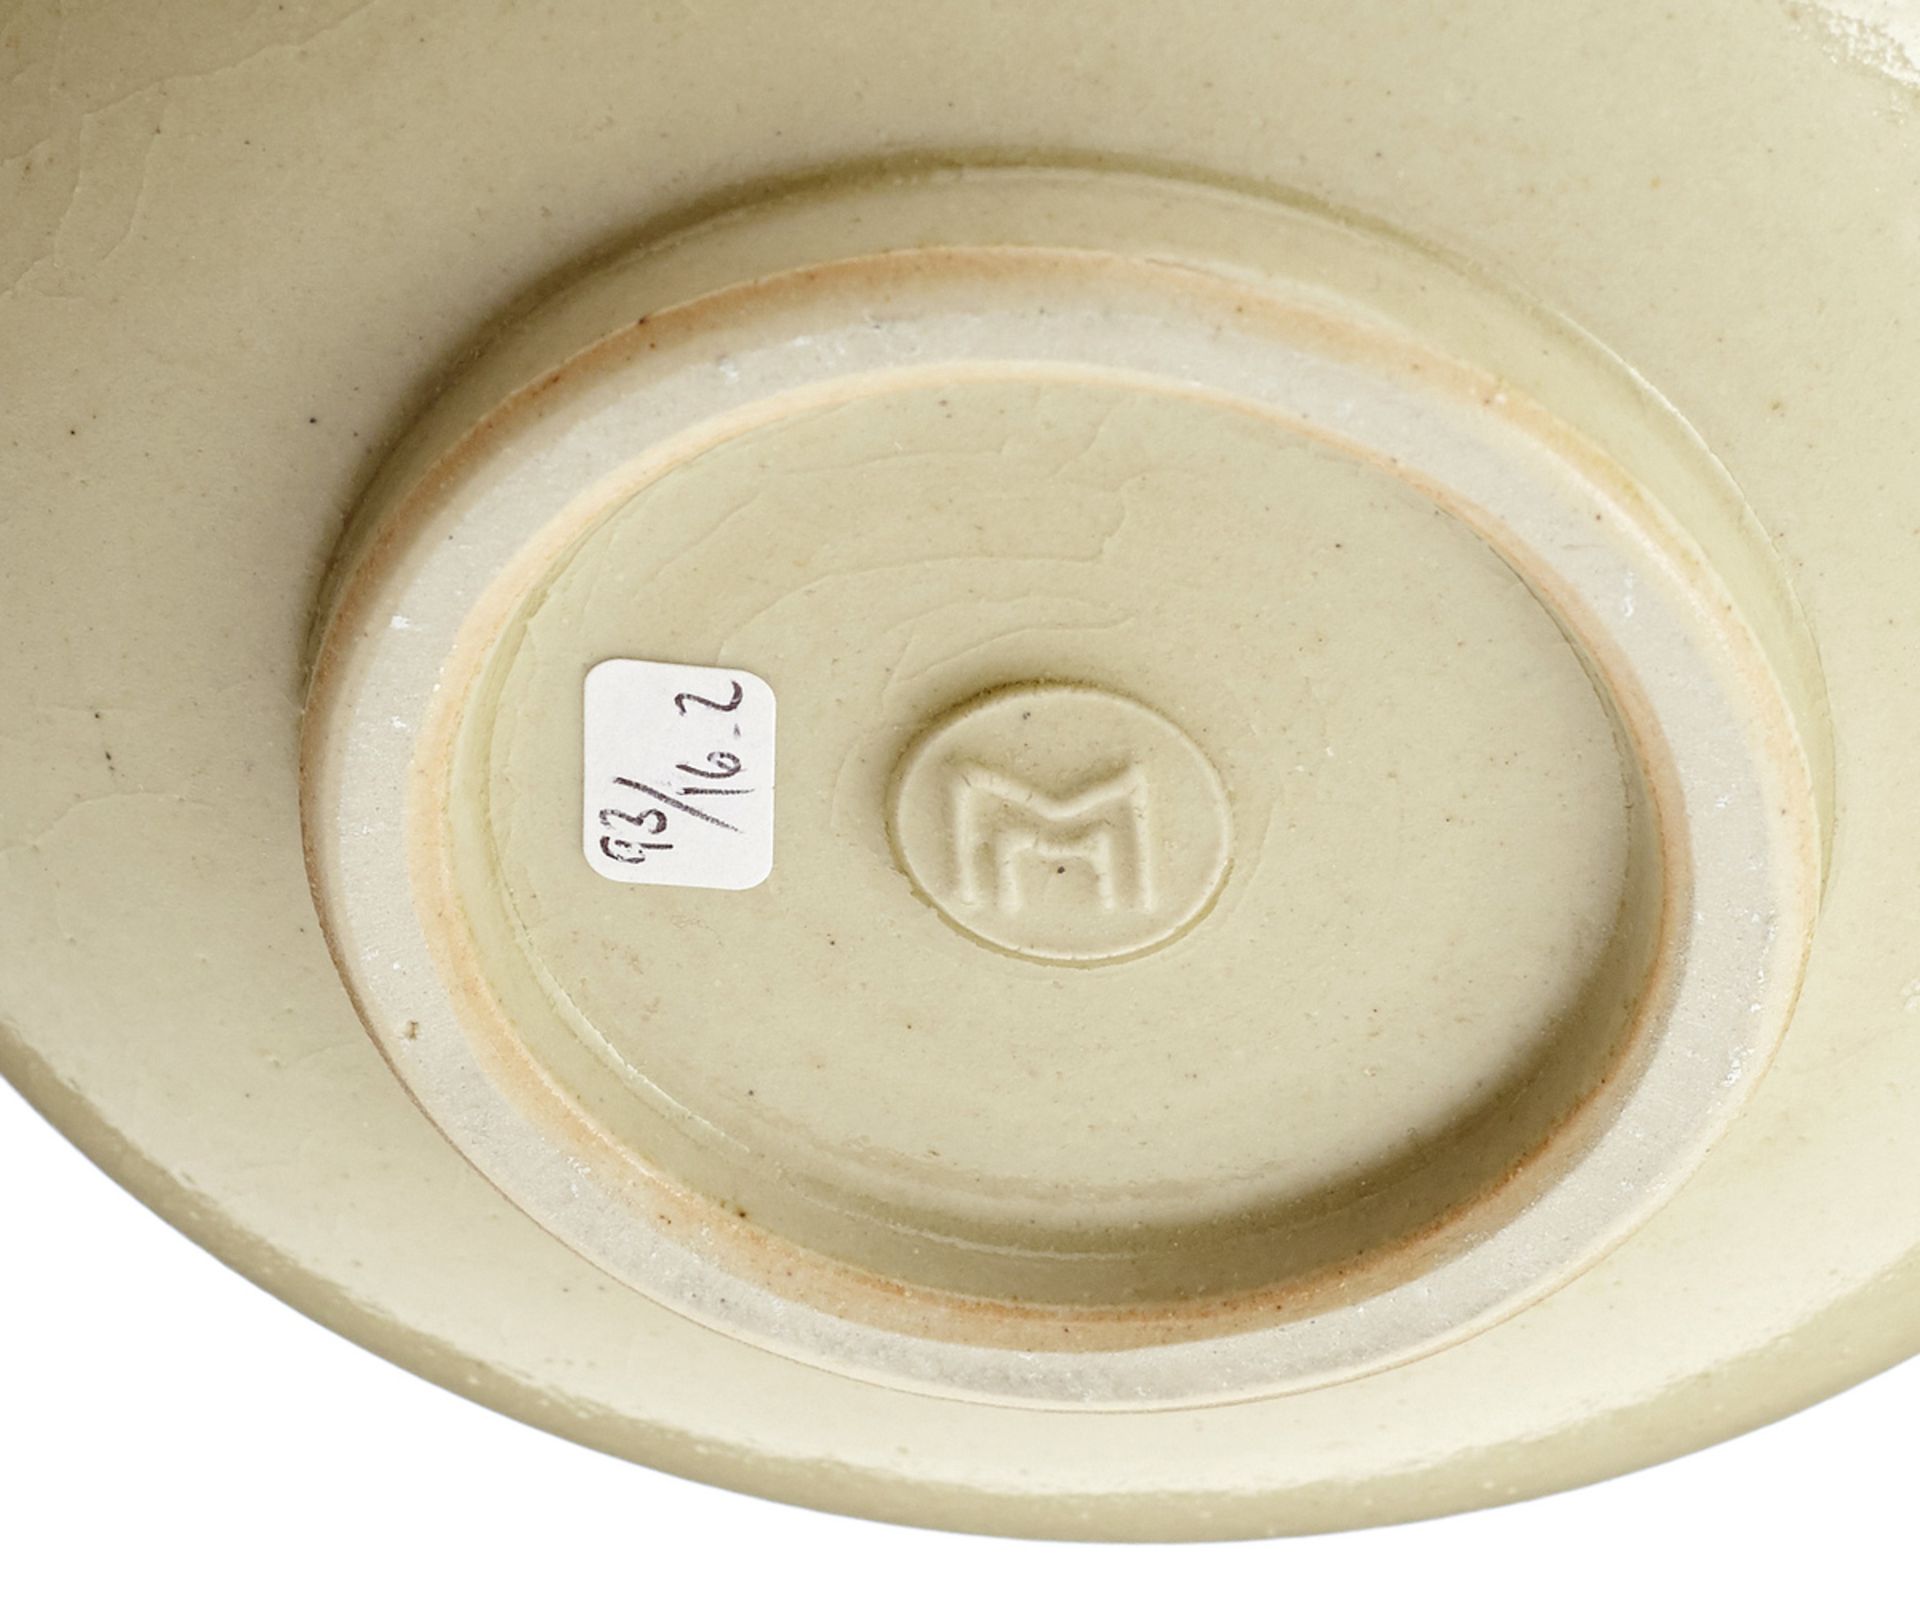 Zwei Vasen "Mario Mascarin"Mitte 20. Jh. Graue Keramikvasen mit Krakelee-Glasur. Beide im Stand - Bild 4 aus 5